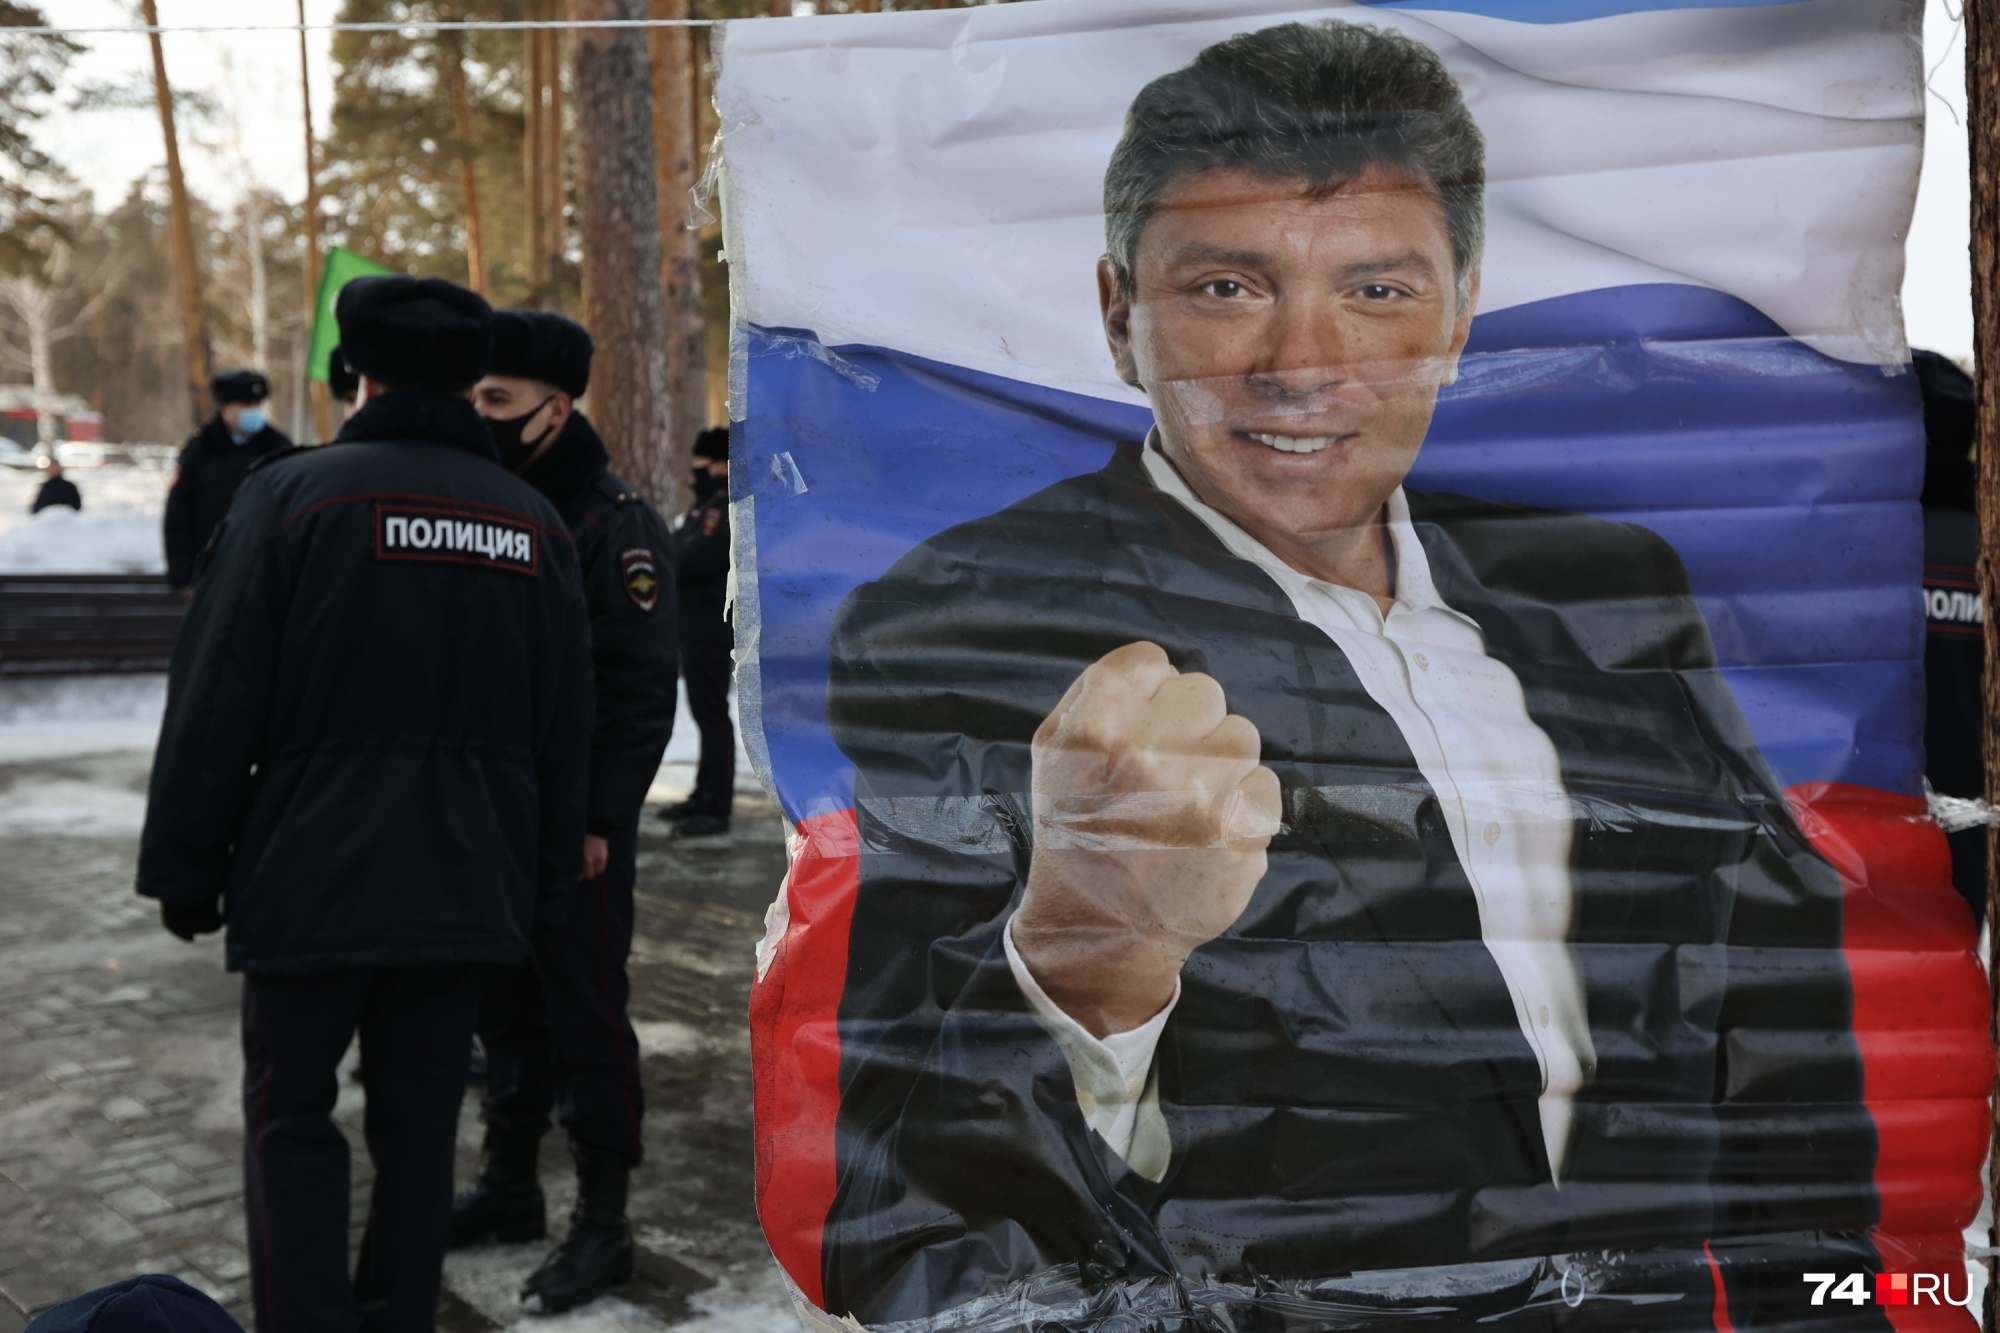 Организатор акции напомнил собравшимся, что Борис Немцов в начале политической карьеры собирал подписи против военной спецоперации и выступал за мир